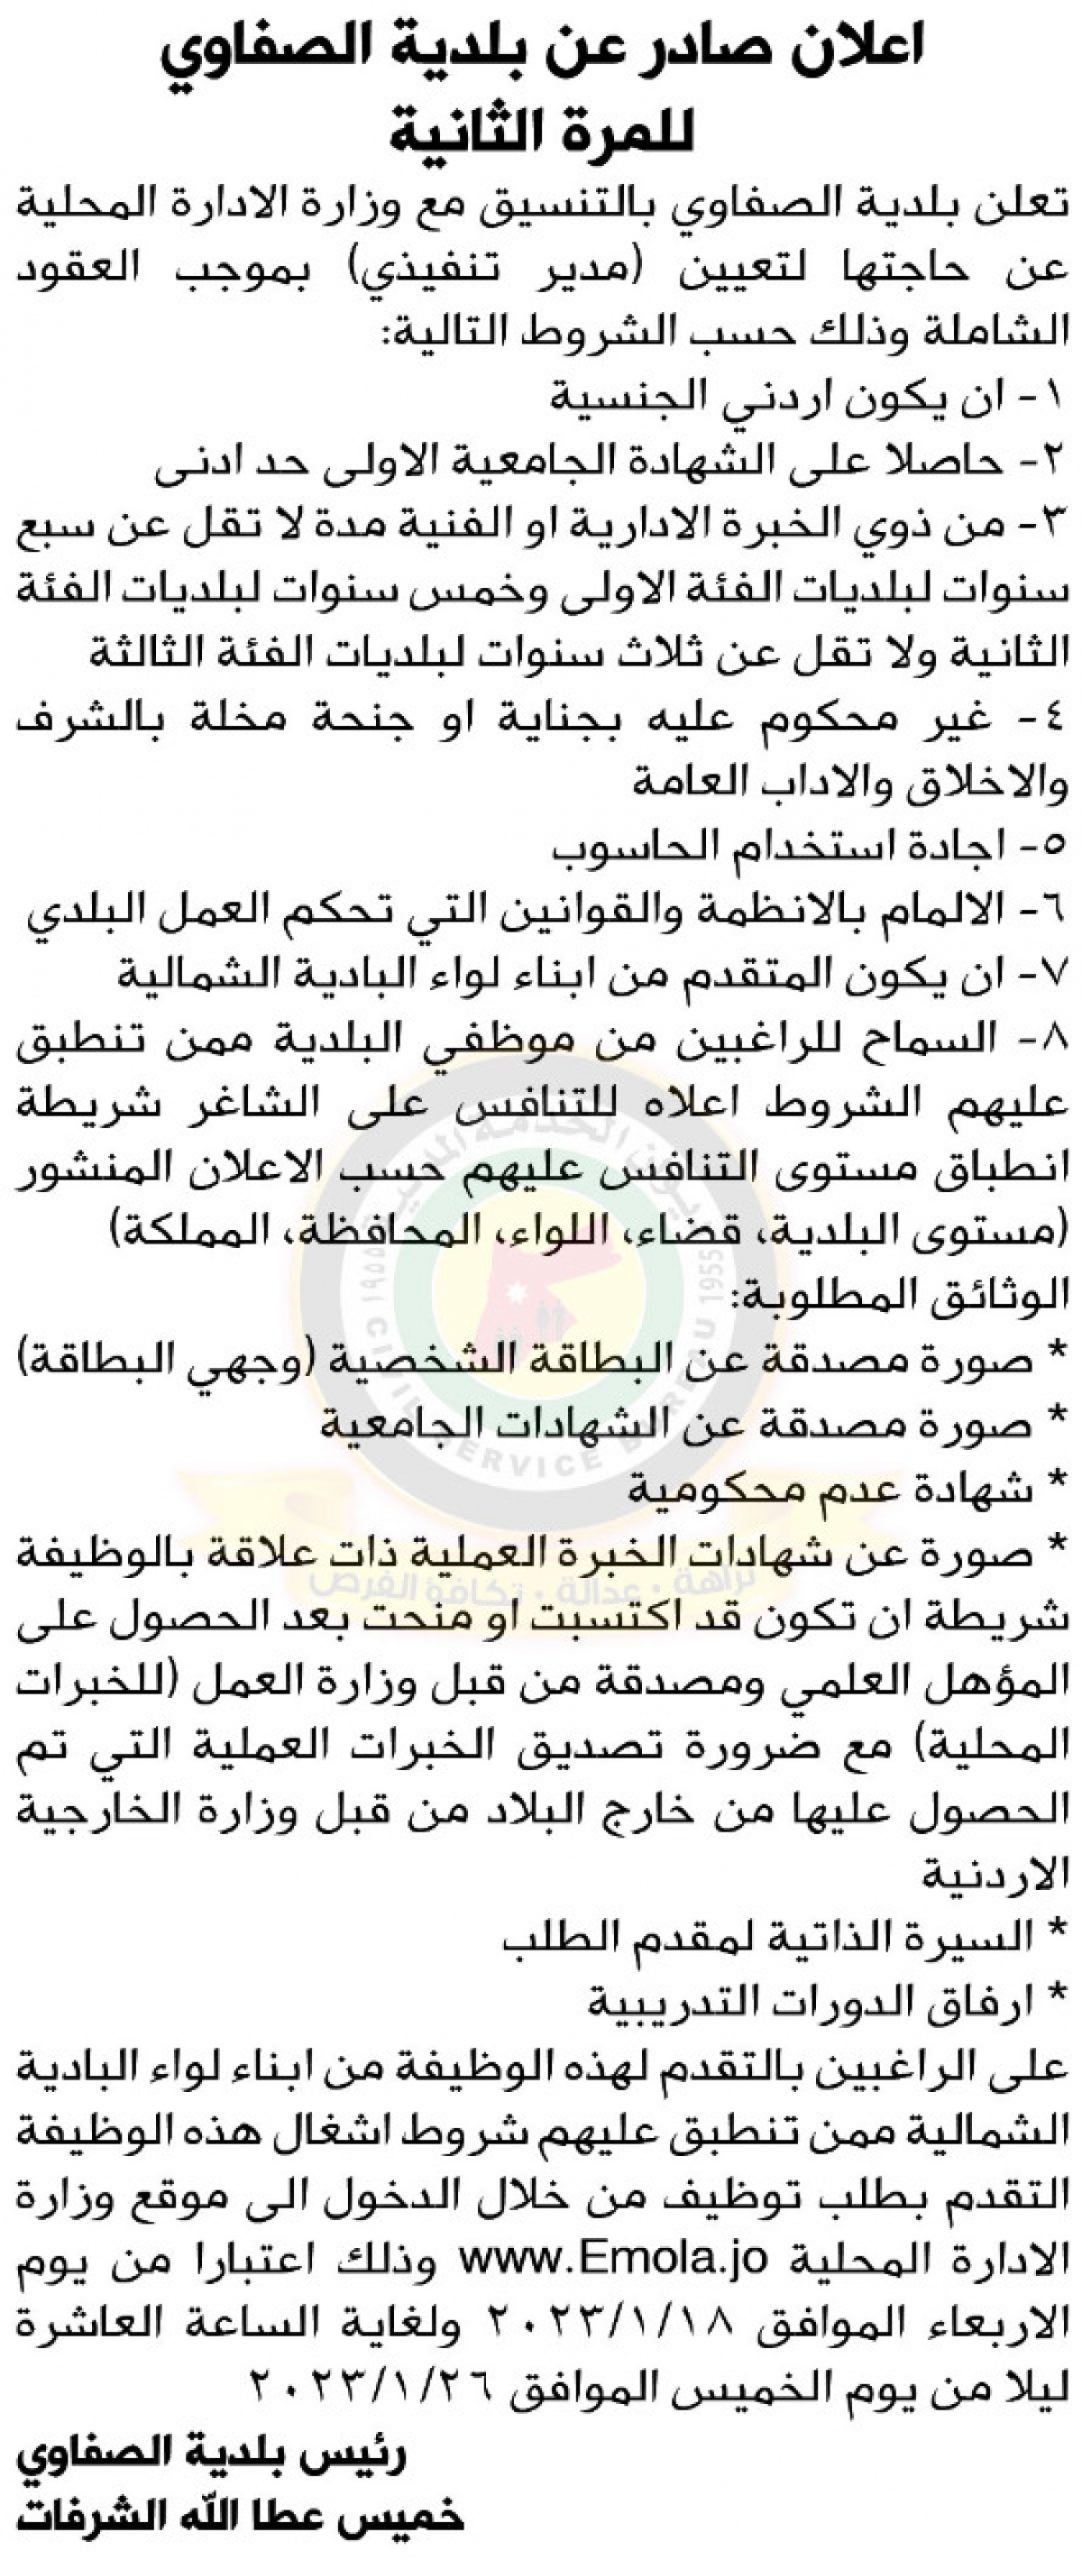 اعلان وظائف شاغرة مدير تنفيذي بموجب العقود الشاملة صادر عن بلدية الصفاوي